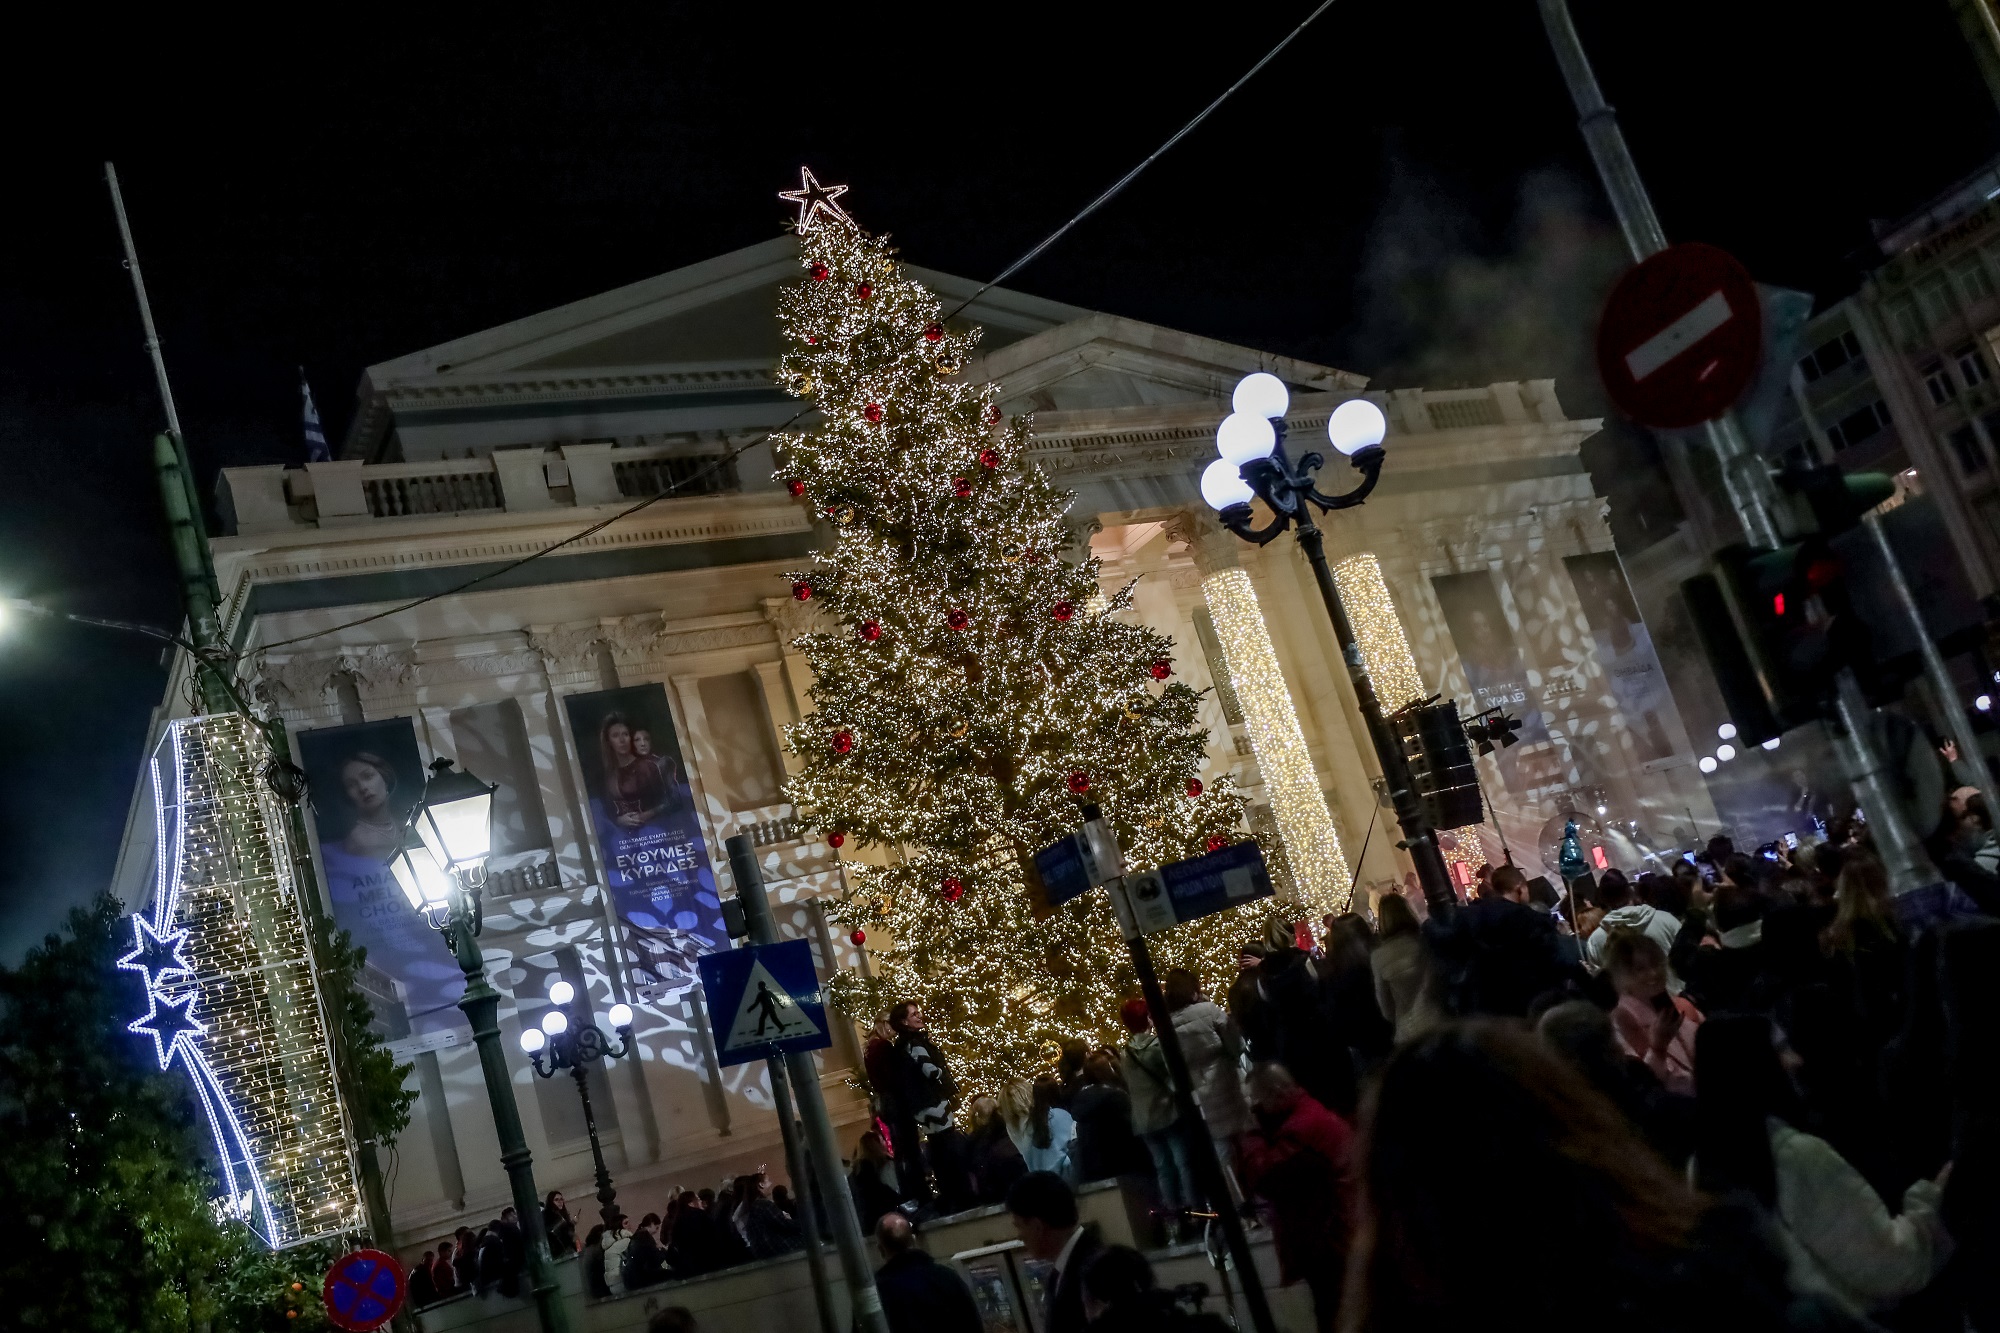 Δήμος Πειραιά: Επαναπρογραμματισμός Χριστουγεννιάτικων εκδηλώσεων λόγω κακοκαιρίας